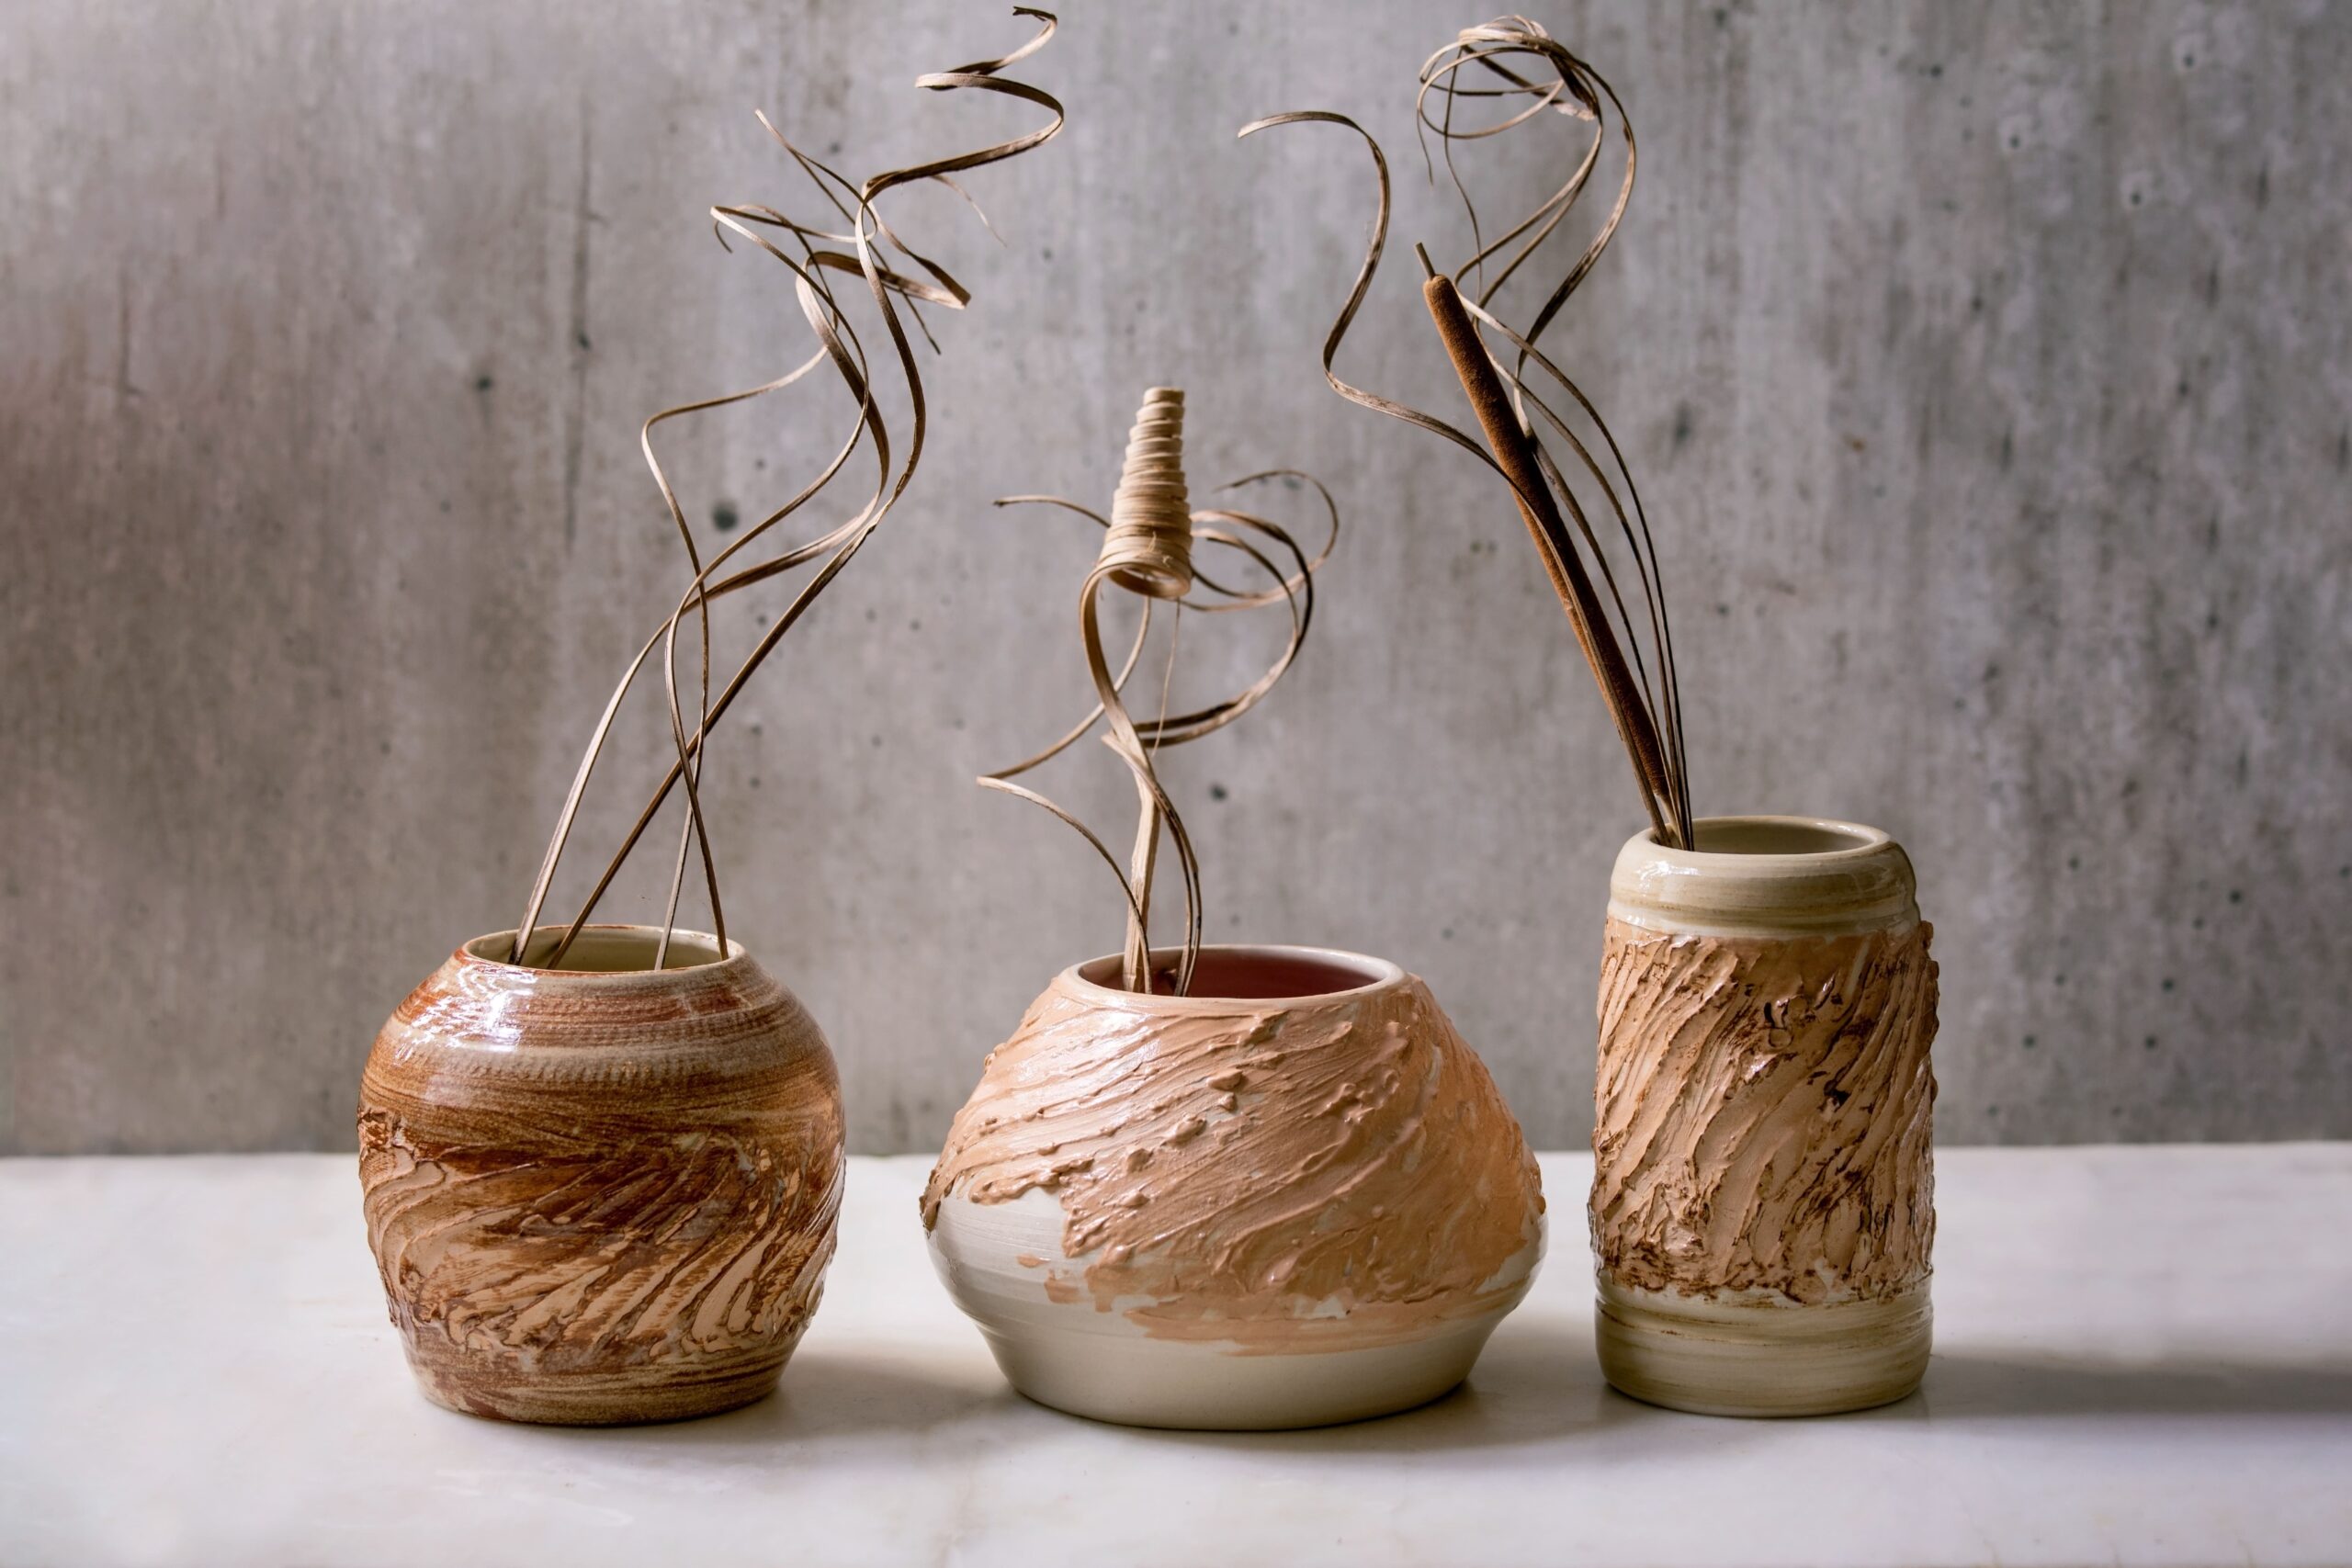 ceramic-vases-with-dry-flowers-2021-08-31-12-56-16-utc-min